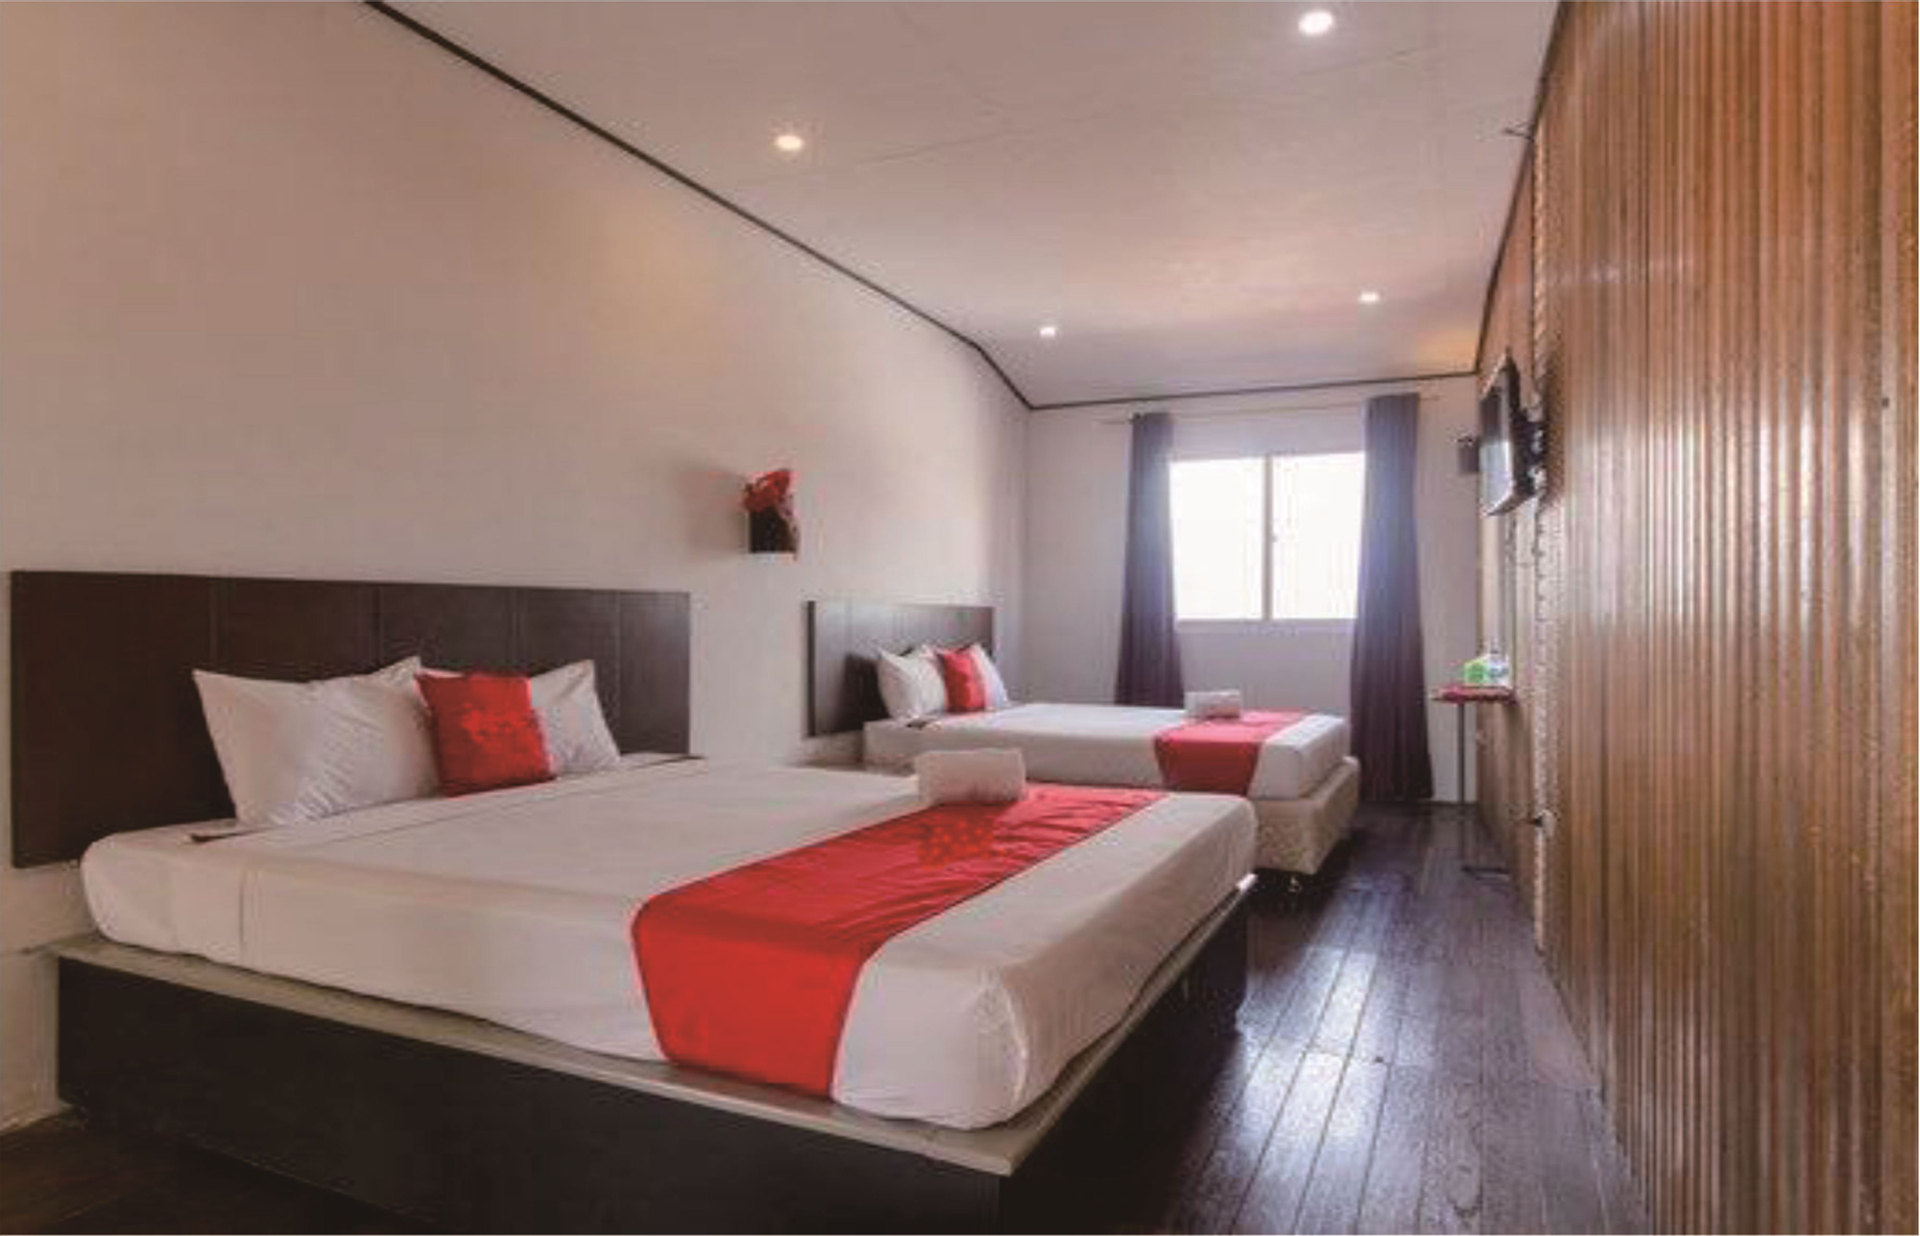 Bedroom 4, Hotel Lovetel, Padang